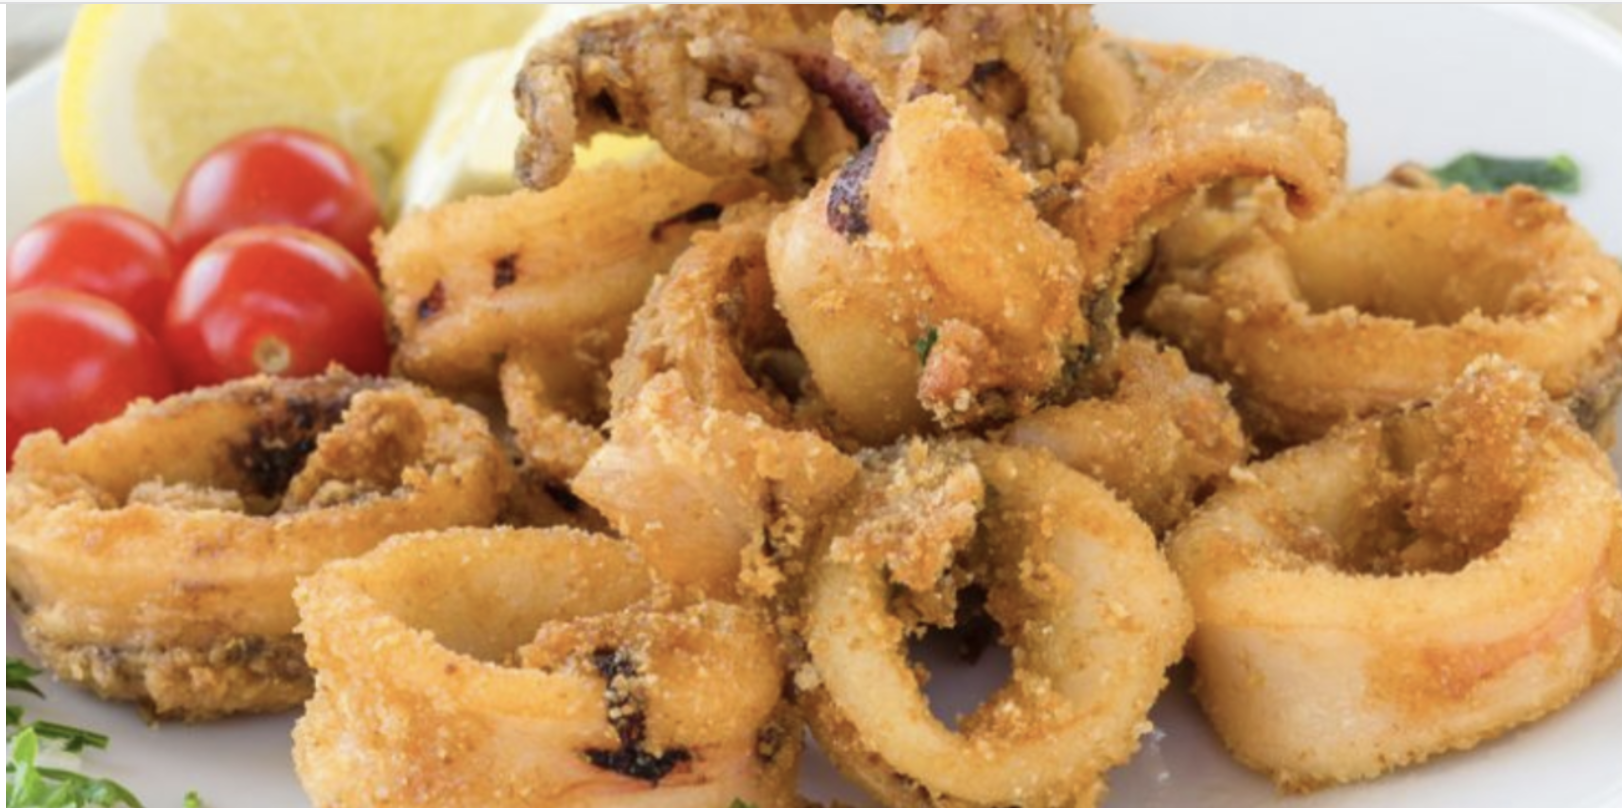 frittura-di-calamari-perfetta,-il-trucco-dello-chef-per-farli-super-croccanti-e-mai-callosi.-“cosa-aggiungo-alla-farina”